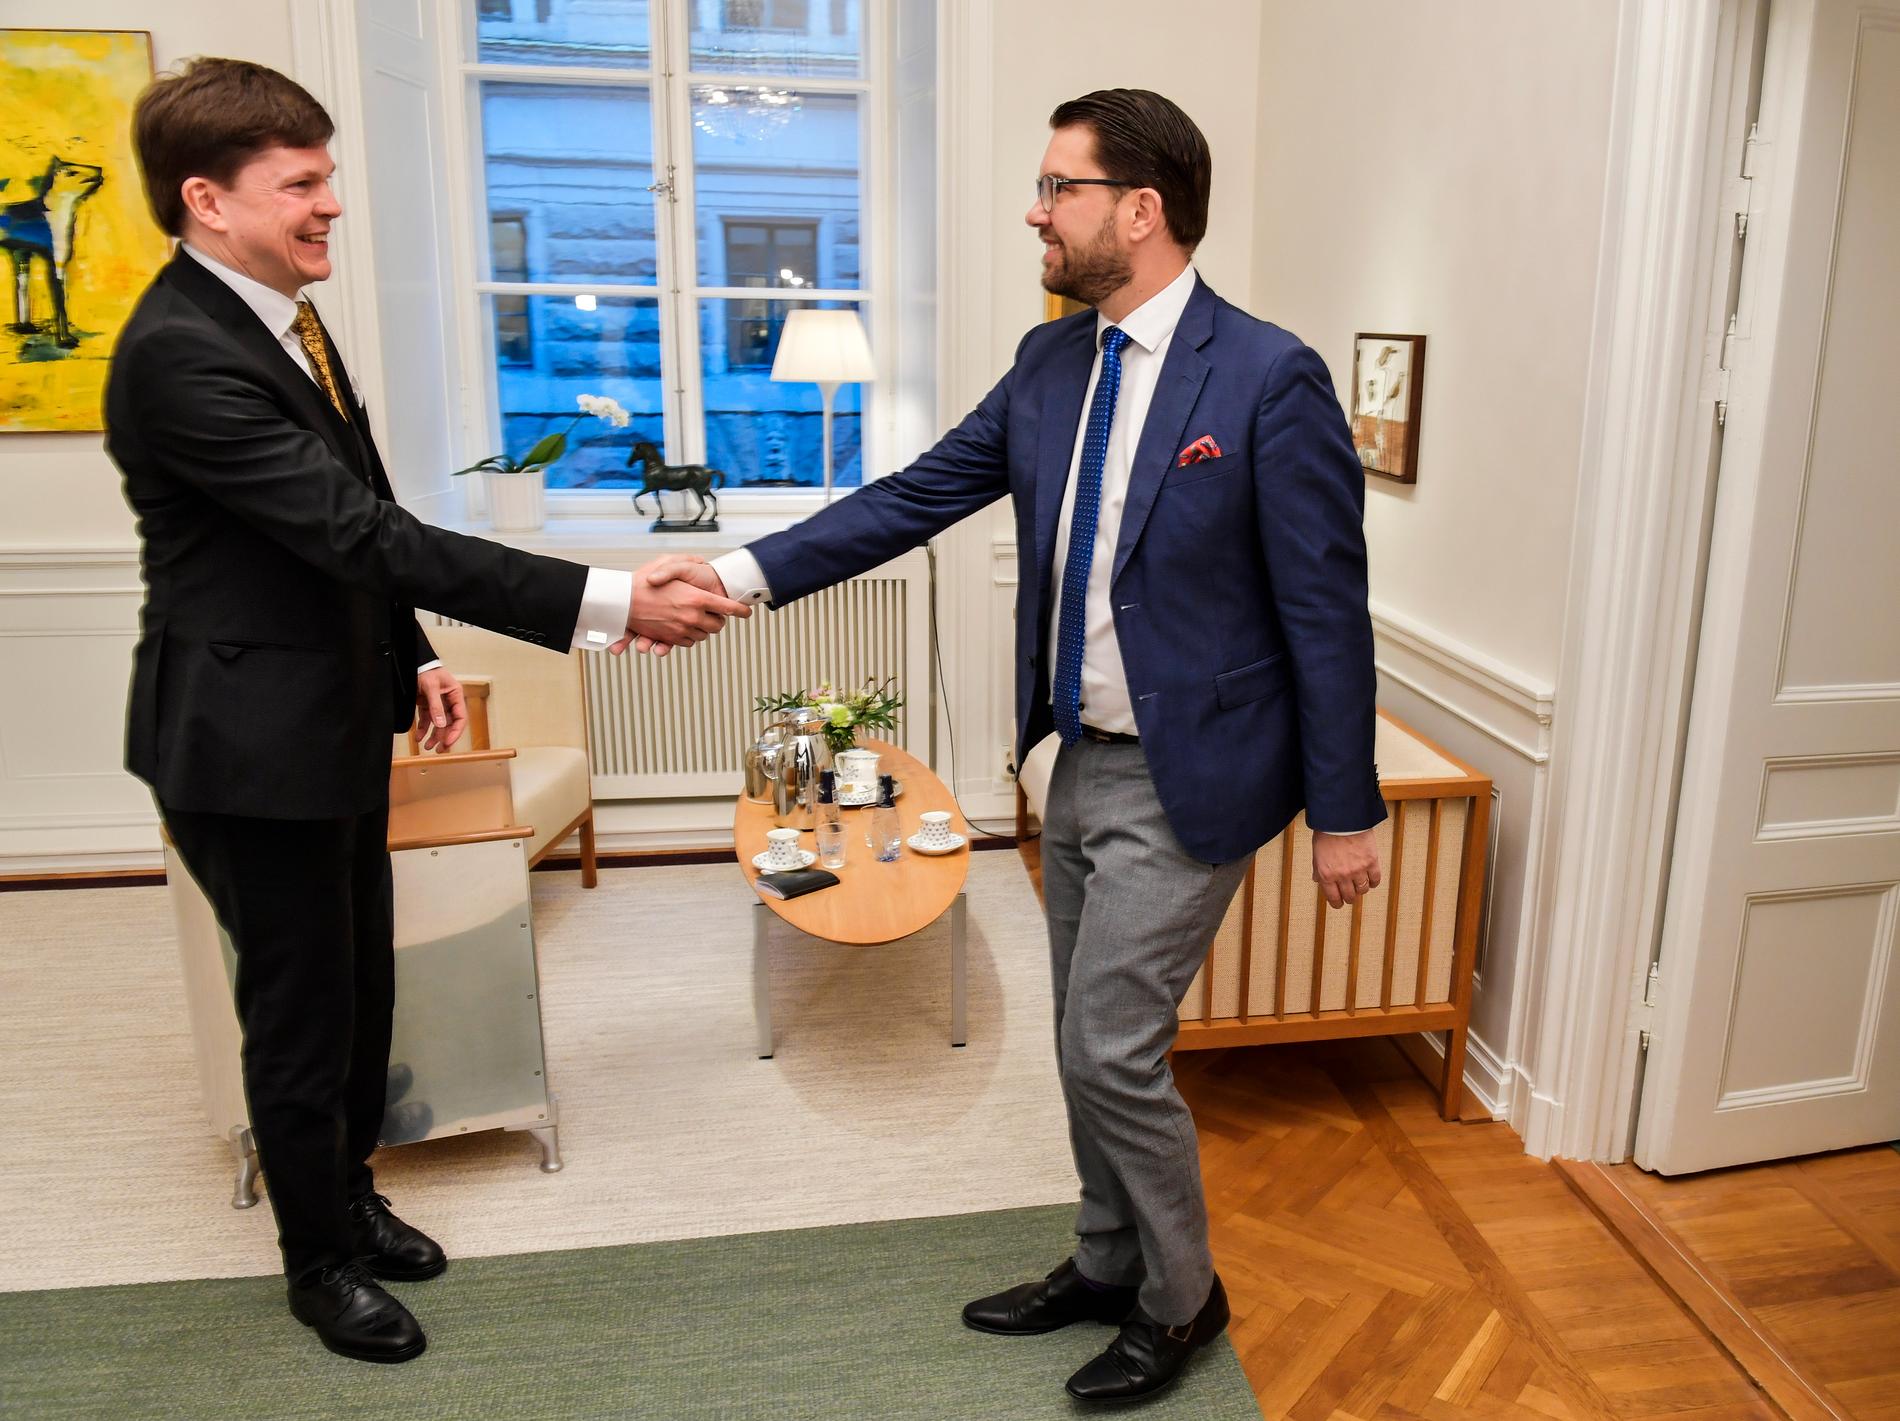 Riksdagens talman Andreas Norlén (M) hälsar på Sverigedemokraternas patiledare Jimme Åkesson (SD) inför deras möte i riksdagshuset.